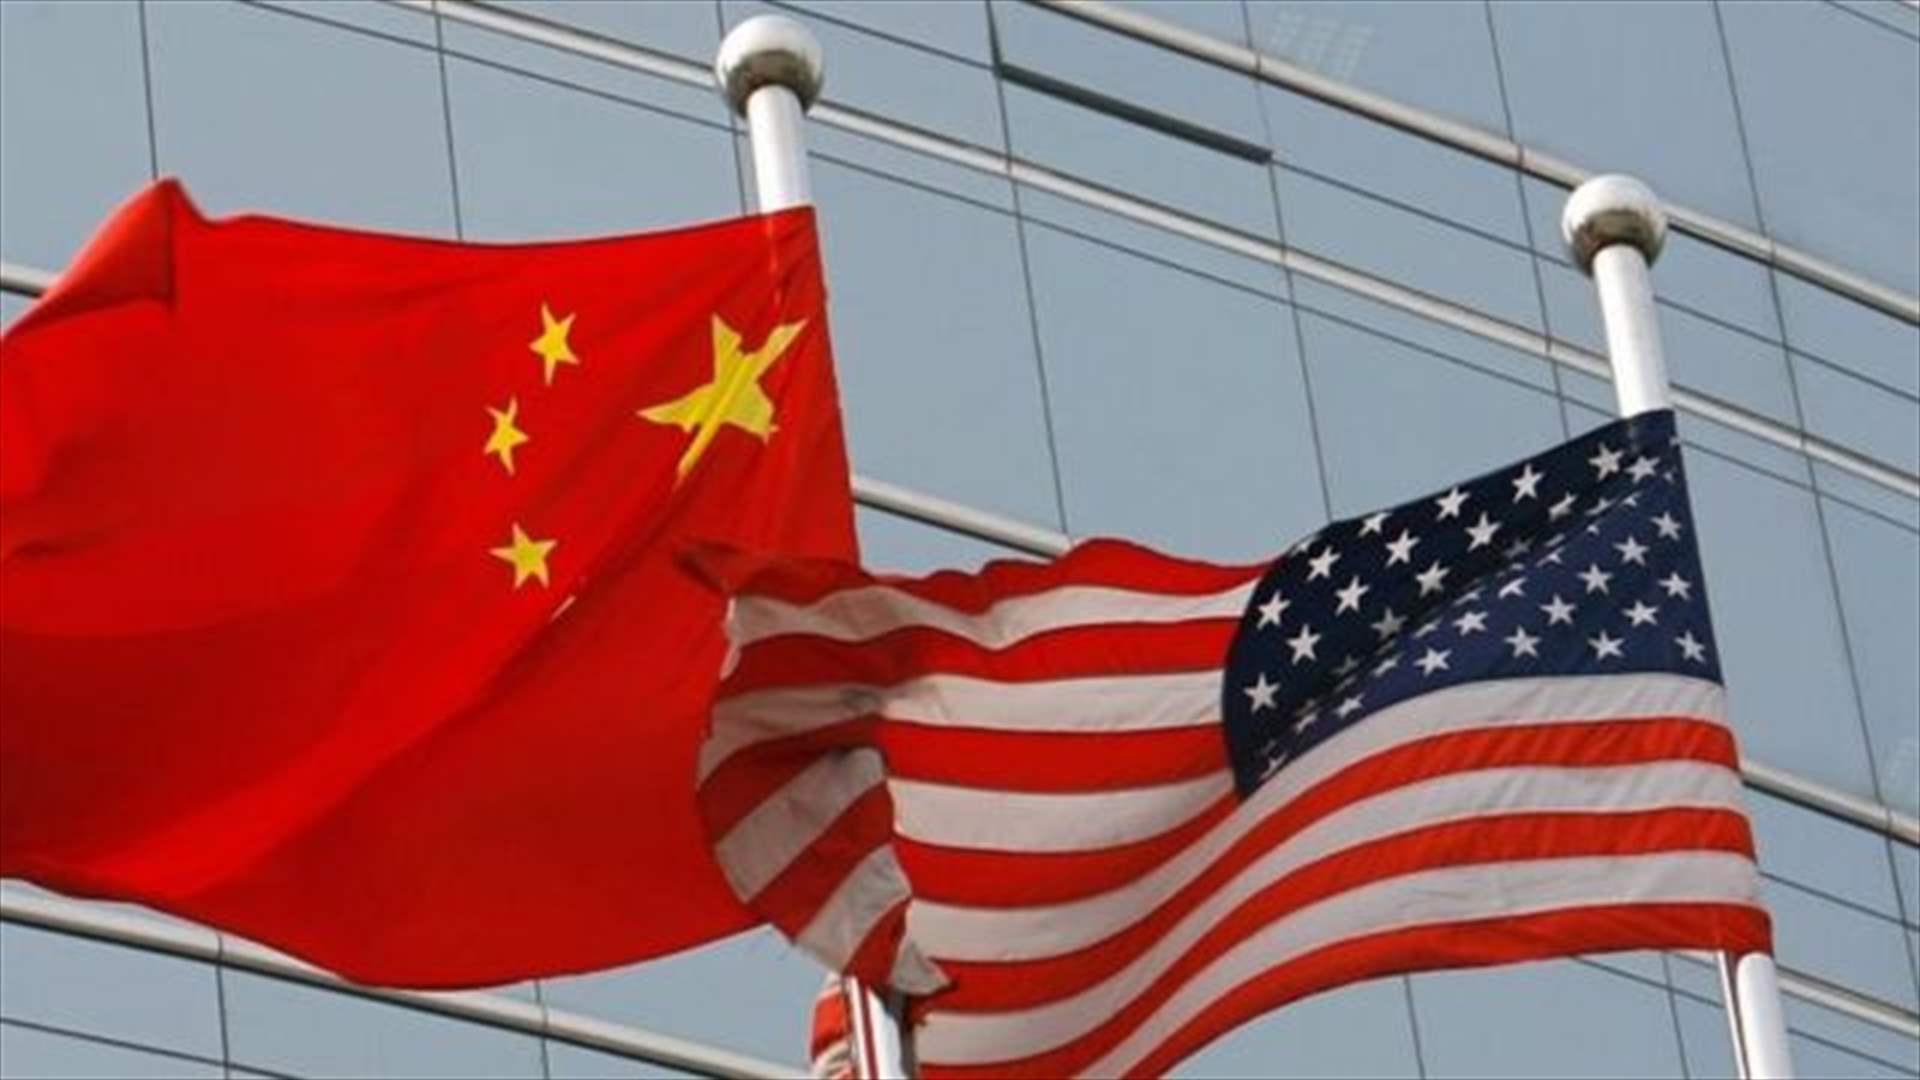 سفير الصين لدى الولايات المتحدة يحث على التعاون الثنائي رغم وجود تحديات &quot;خطرة&quot;